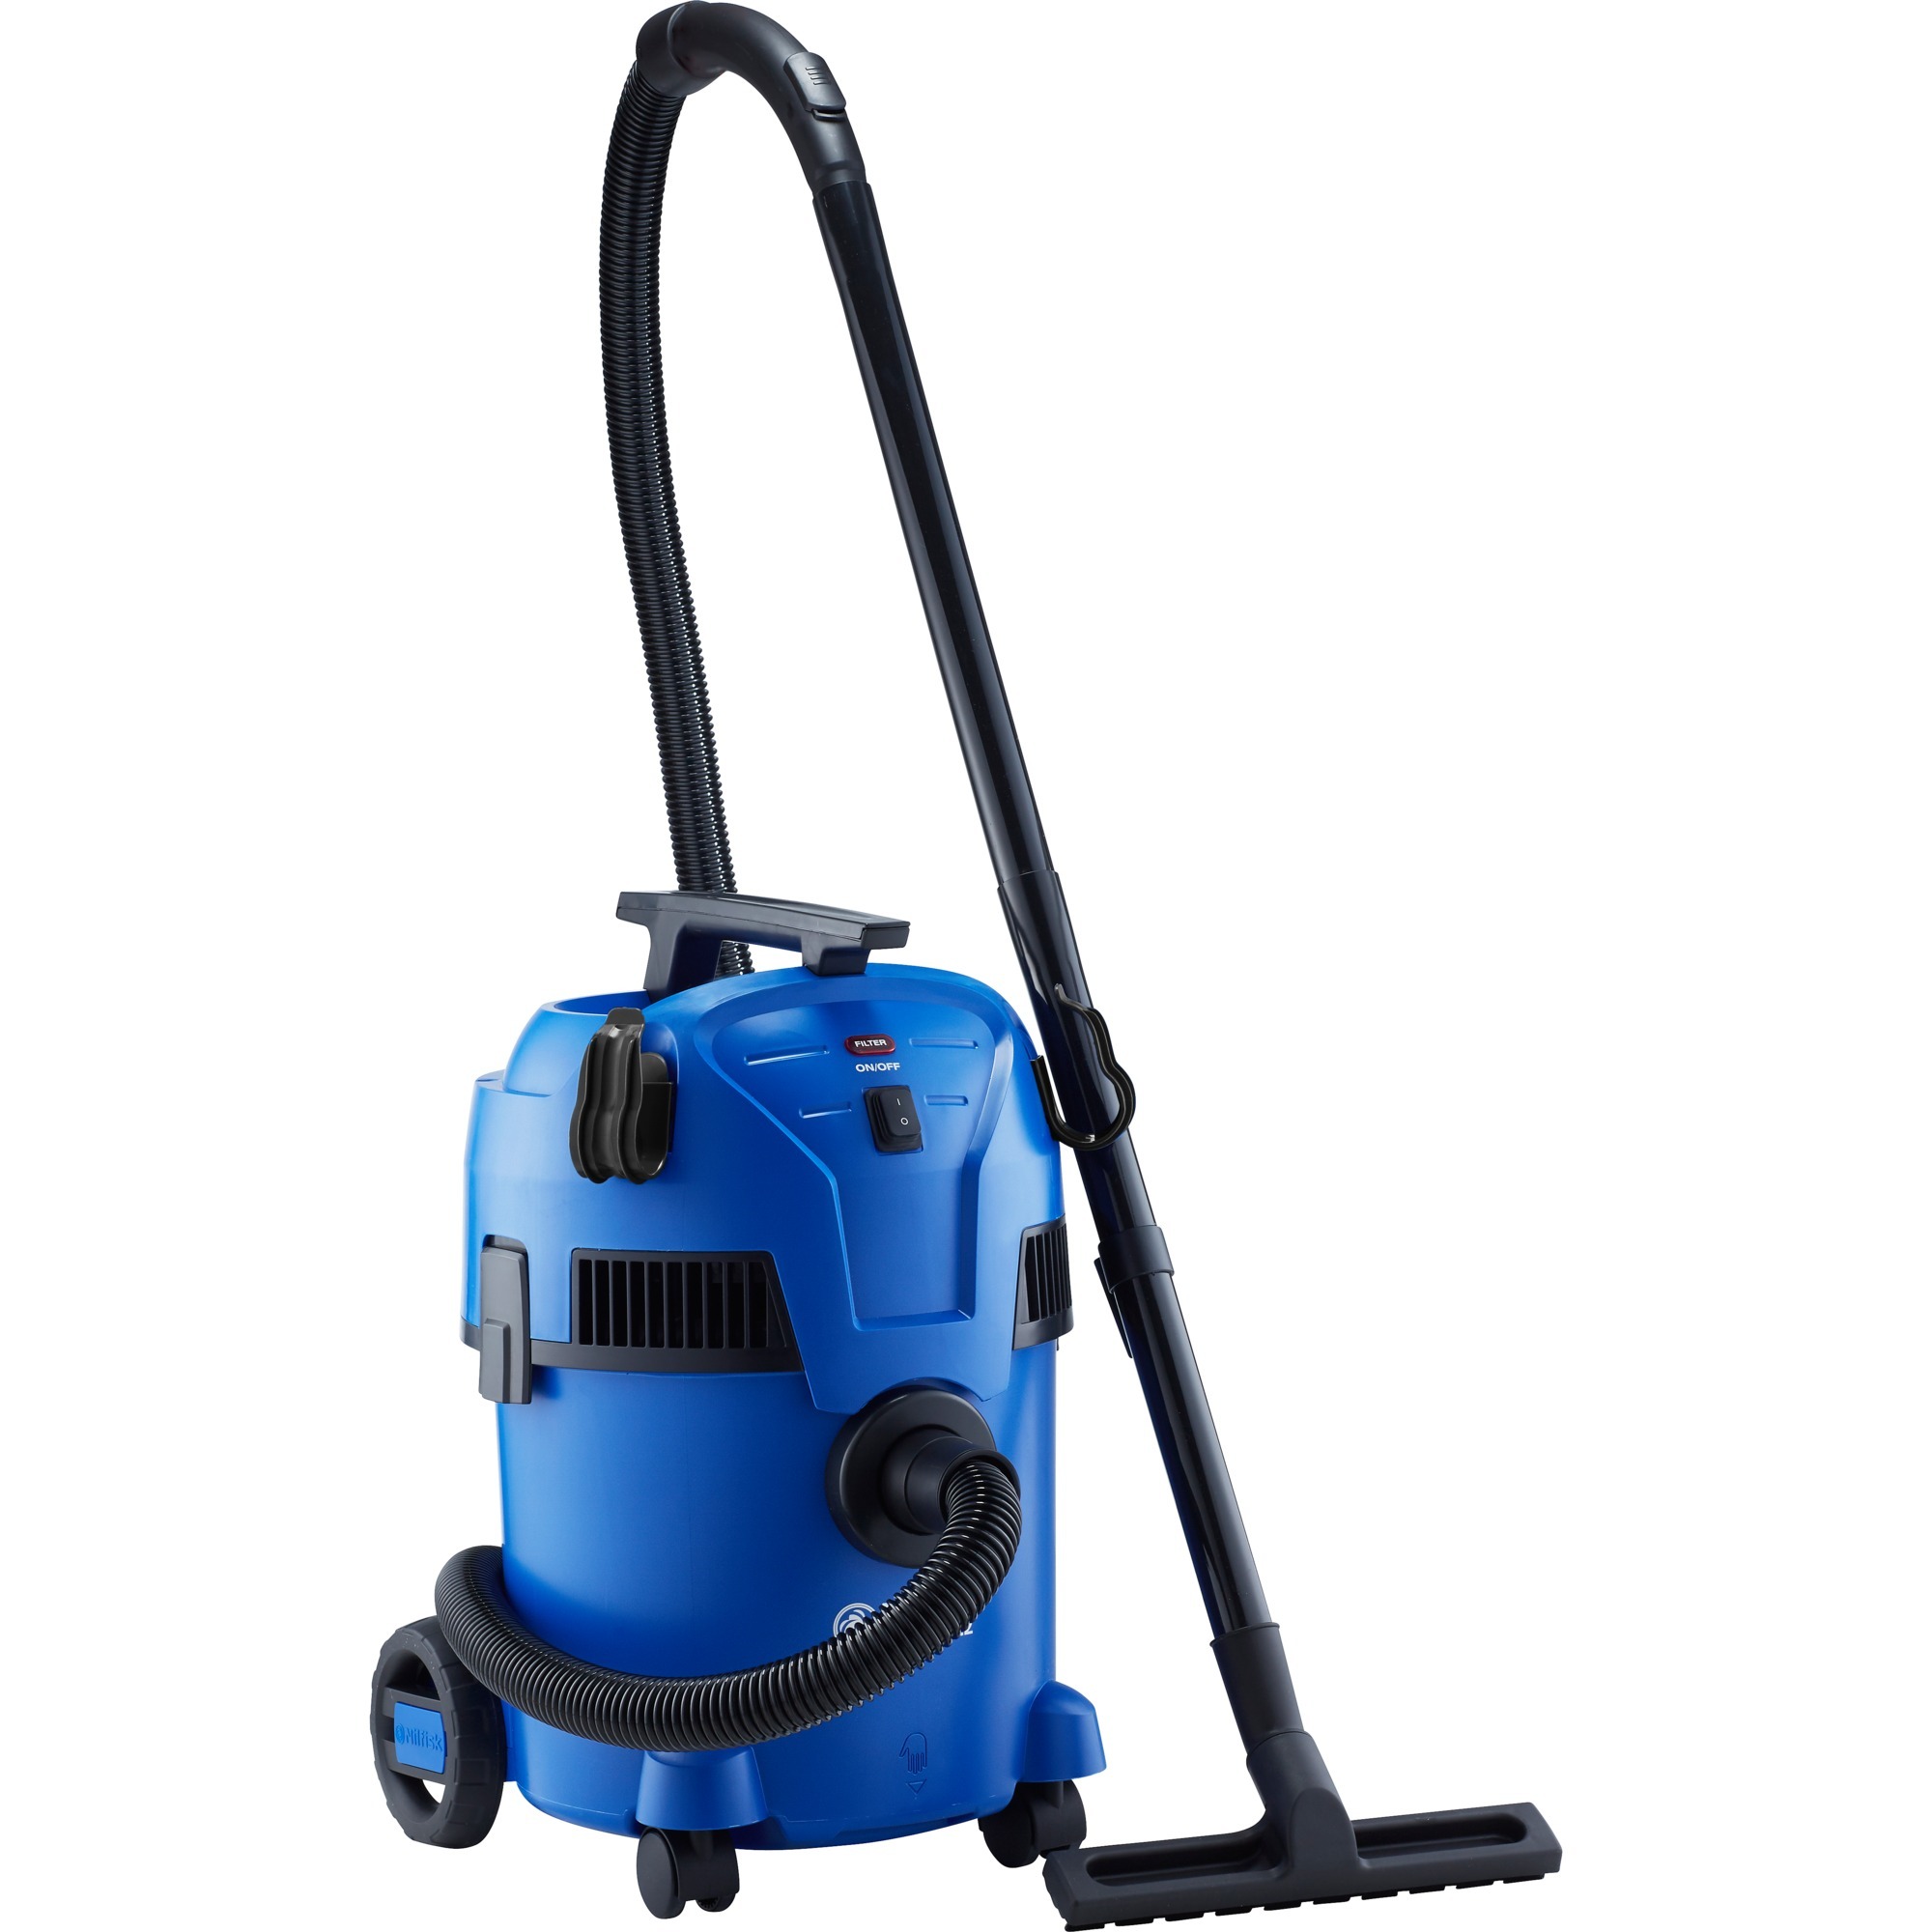 18451550, Wet/dry vacuum cleaner